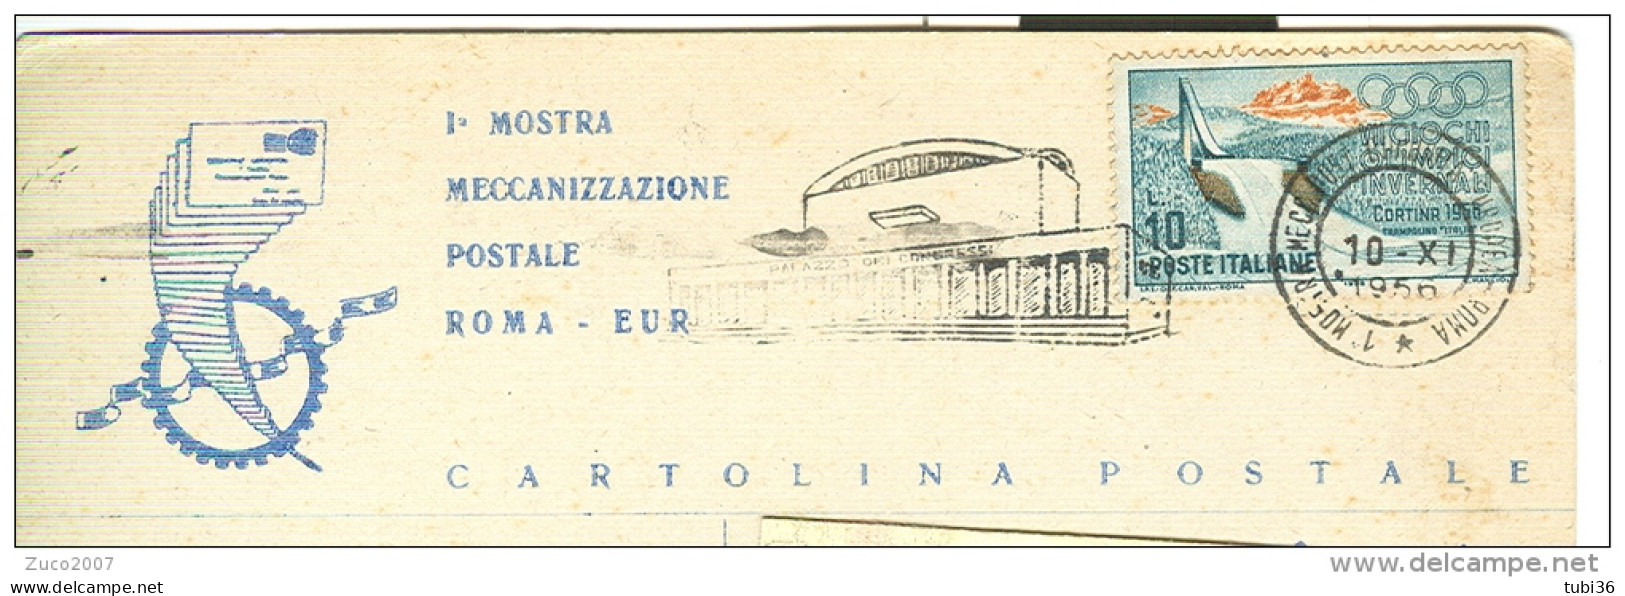 MOSTRA MECCANIZZAZIONE POSTALE  ROMA - EUR, 1956, ANNULLO SPECIALE  FIGURATO  SU CARTOLINA DEDICATA,VIAGGIATA  1956, - Poste